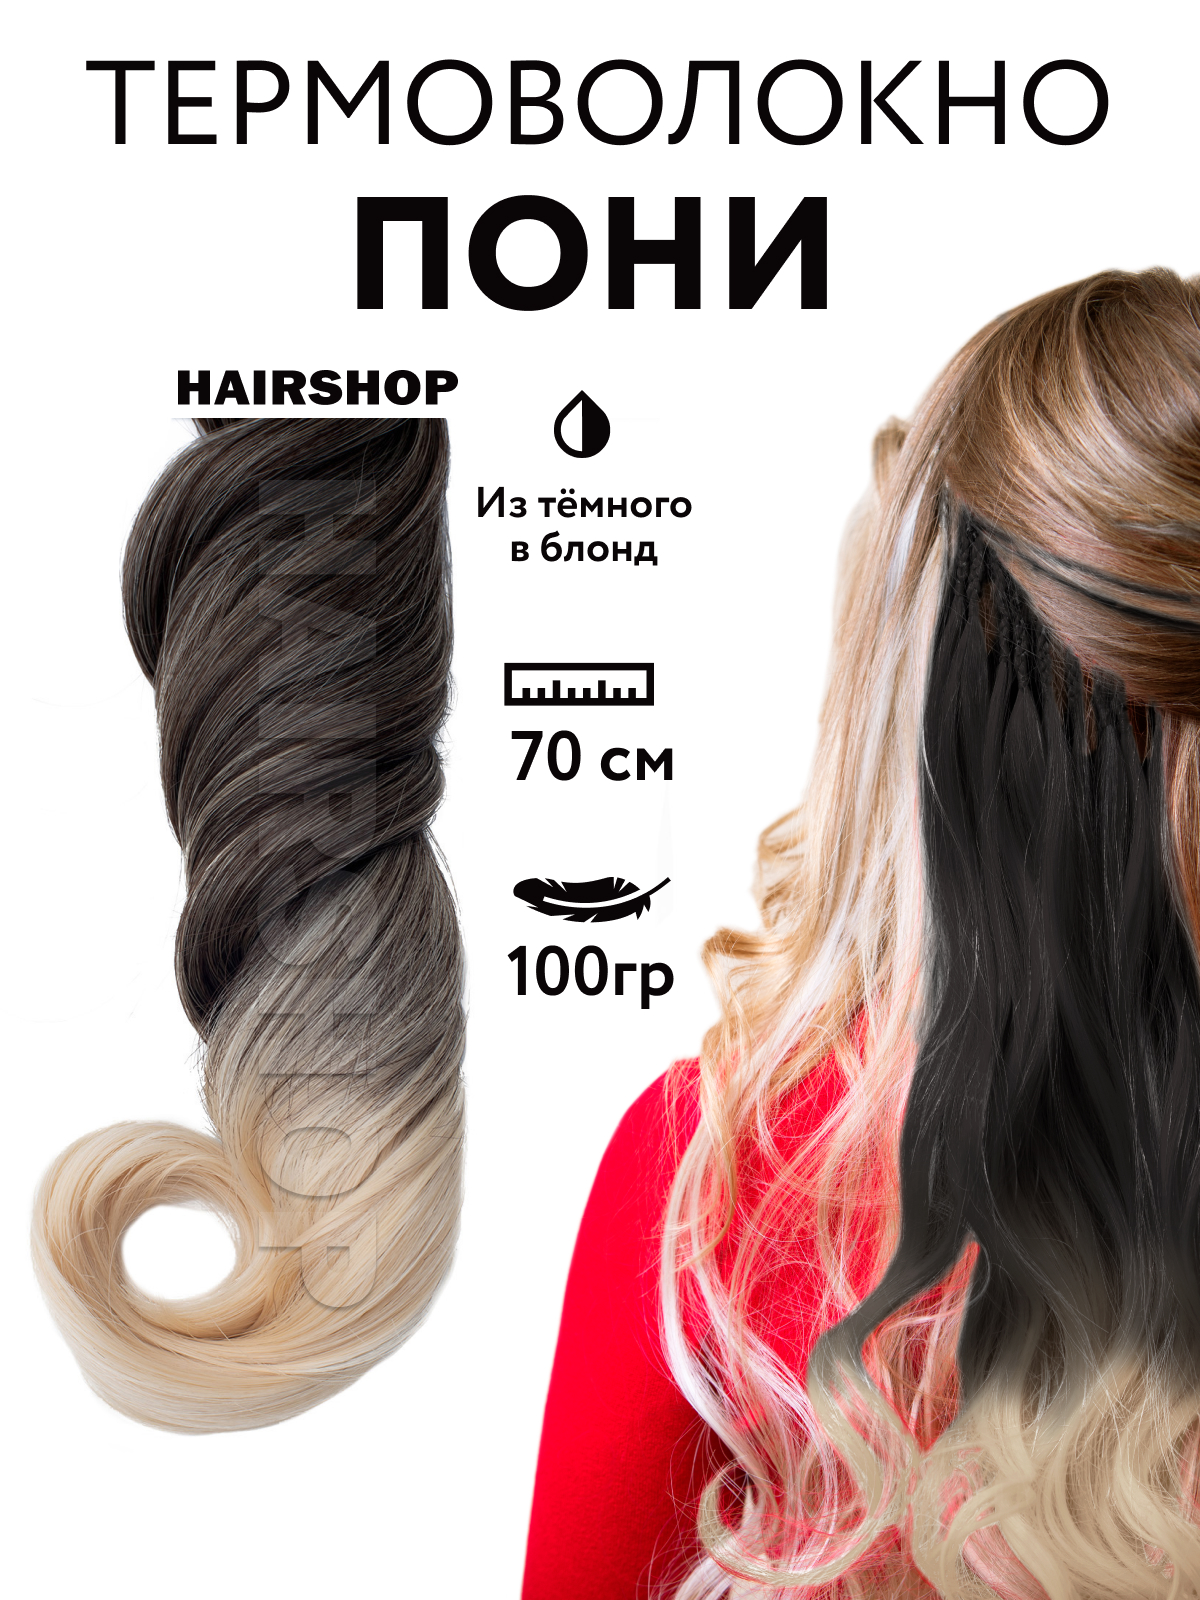 Канекалон HAIRSHOP Пони HairUp для точечного афронаращивания Из темного в блонд 1,4м канекалон hairshop пони hairup для точечного афронаращивания к24 2 темно розовый 1 4м